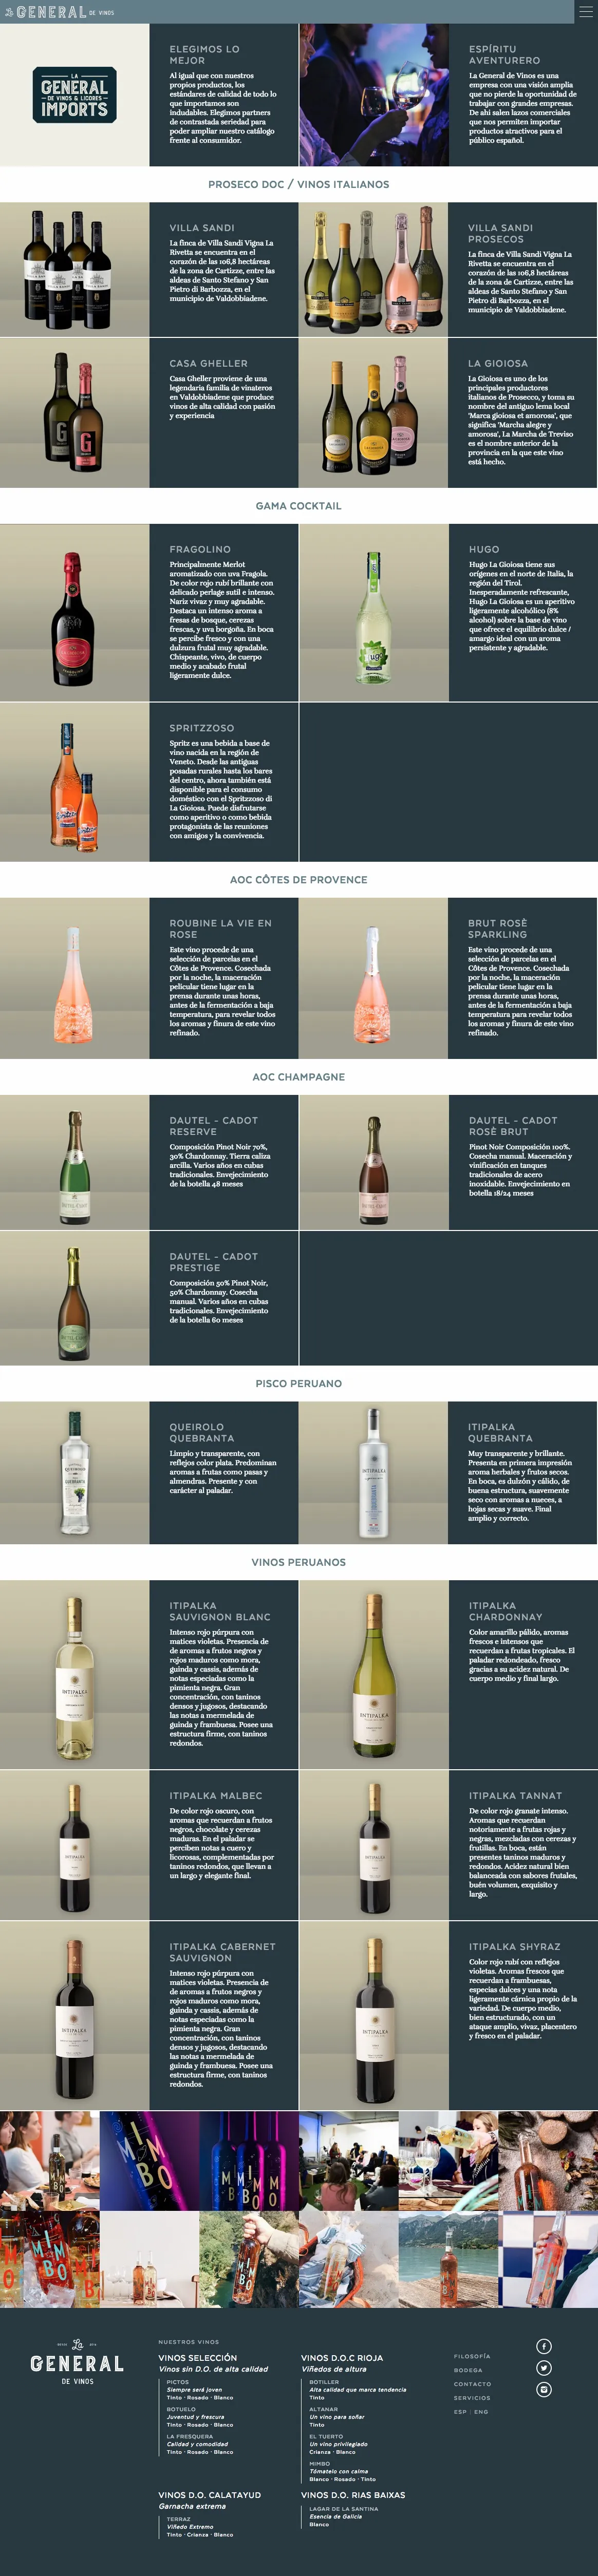 Diseño website y frontend para proyecto online de vinos en Zaragoza y Barcelona